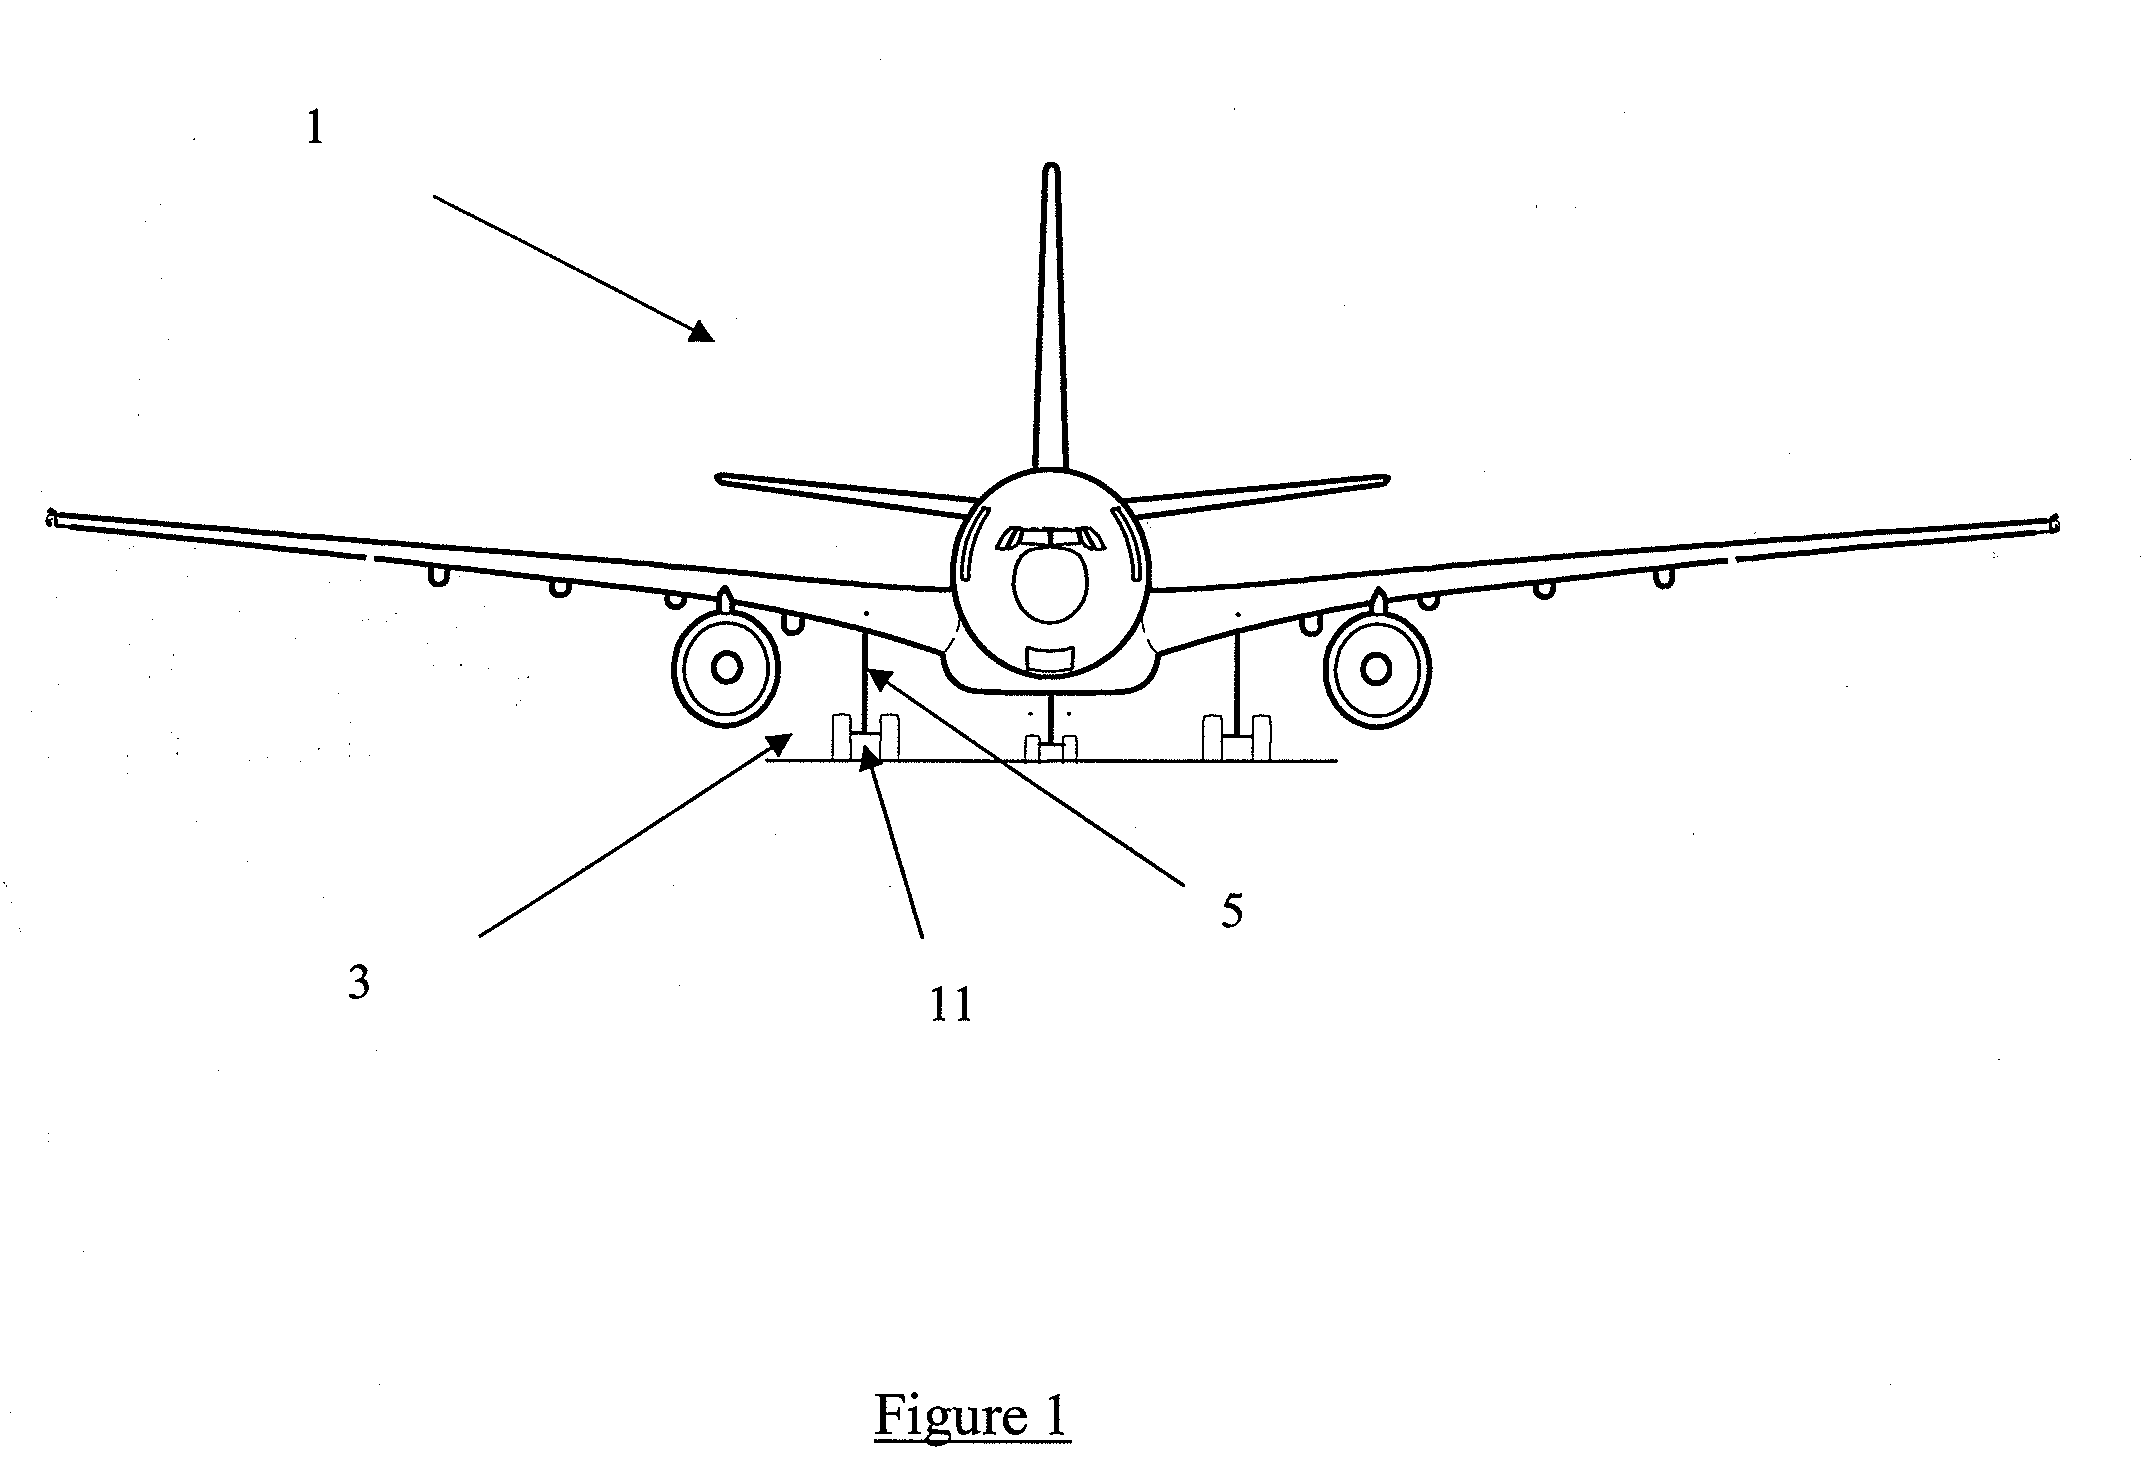 Landing gear